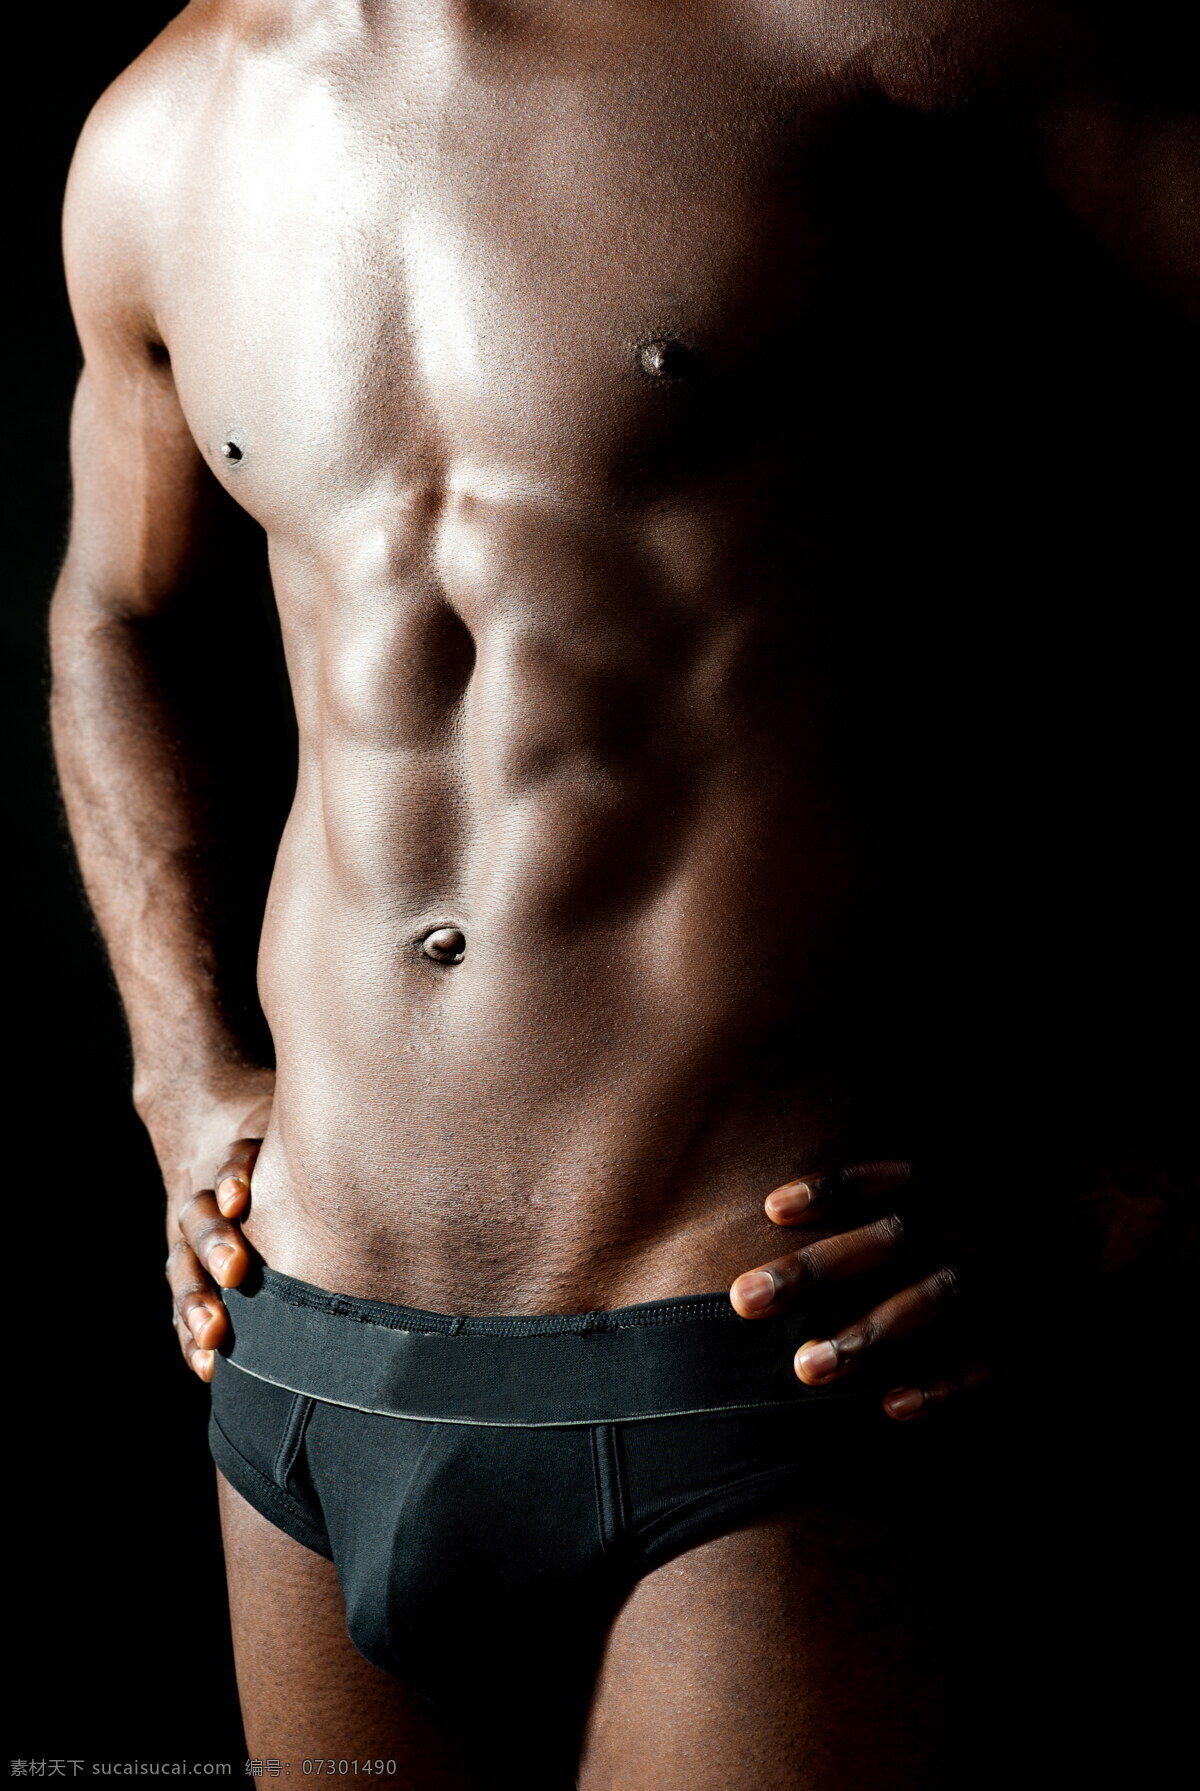 掐 腰 内衣 外国 男模 站立 三角裤 掐腰 内衣模特 姿势 肌肉 健壮 锻炼 健身 运动 黑人 外国男人 生活人物 人物图片